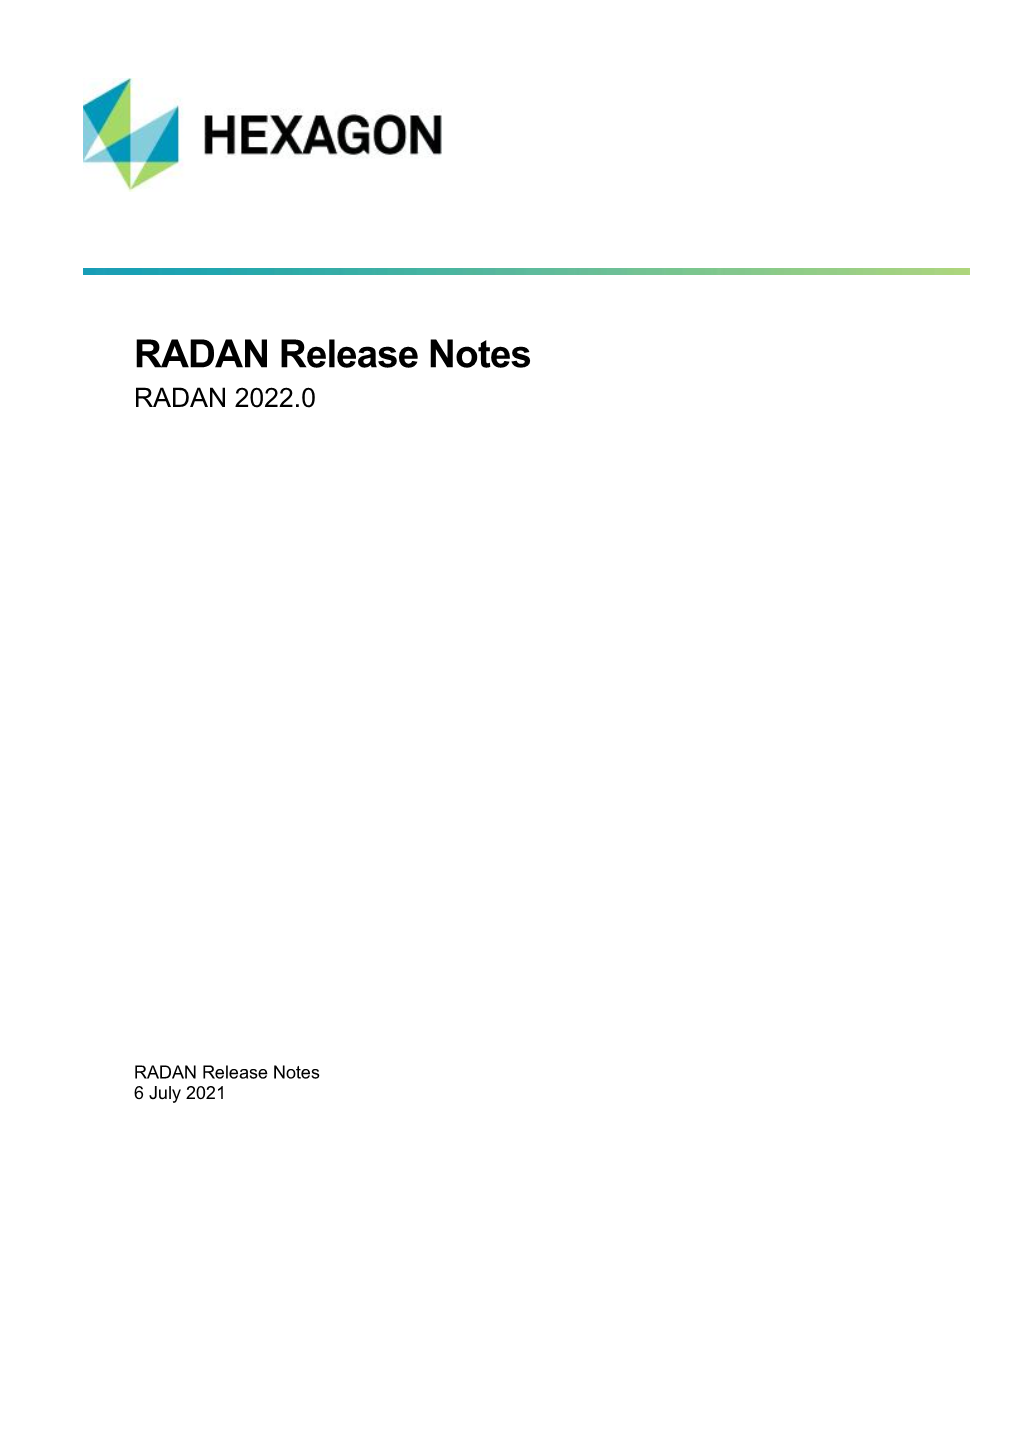 RADAN Release Notes RADAN 2022.0